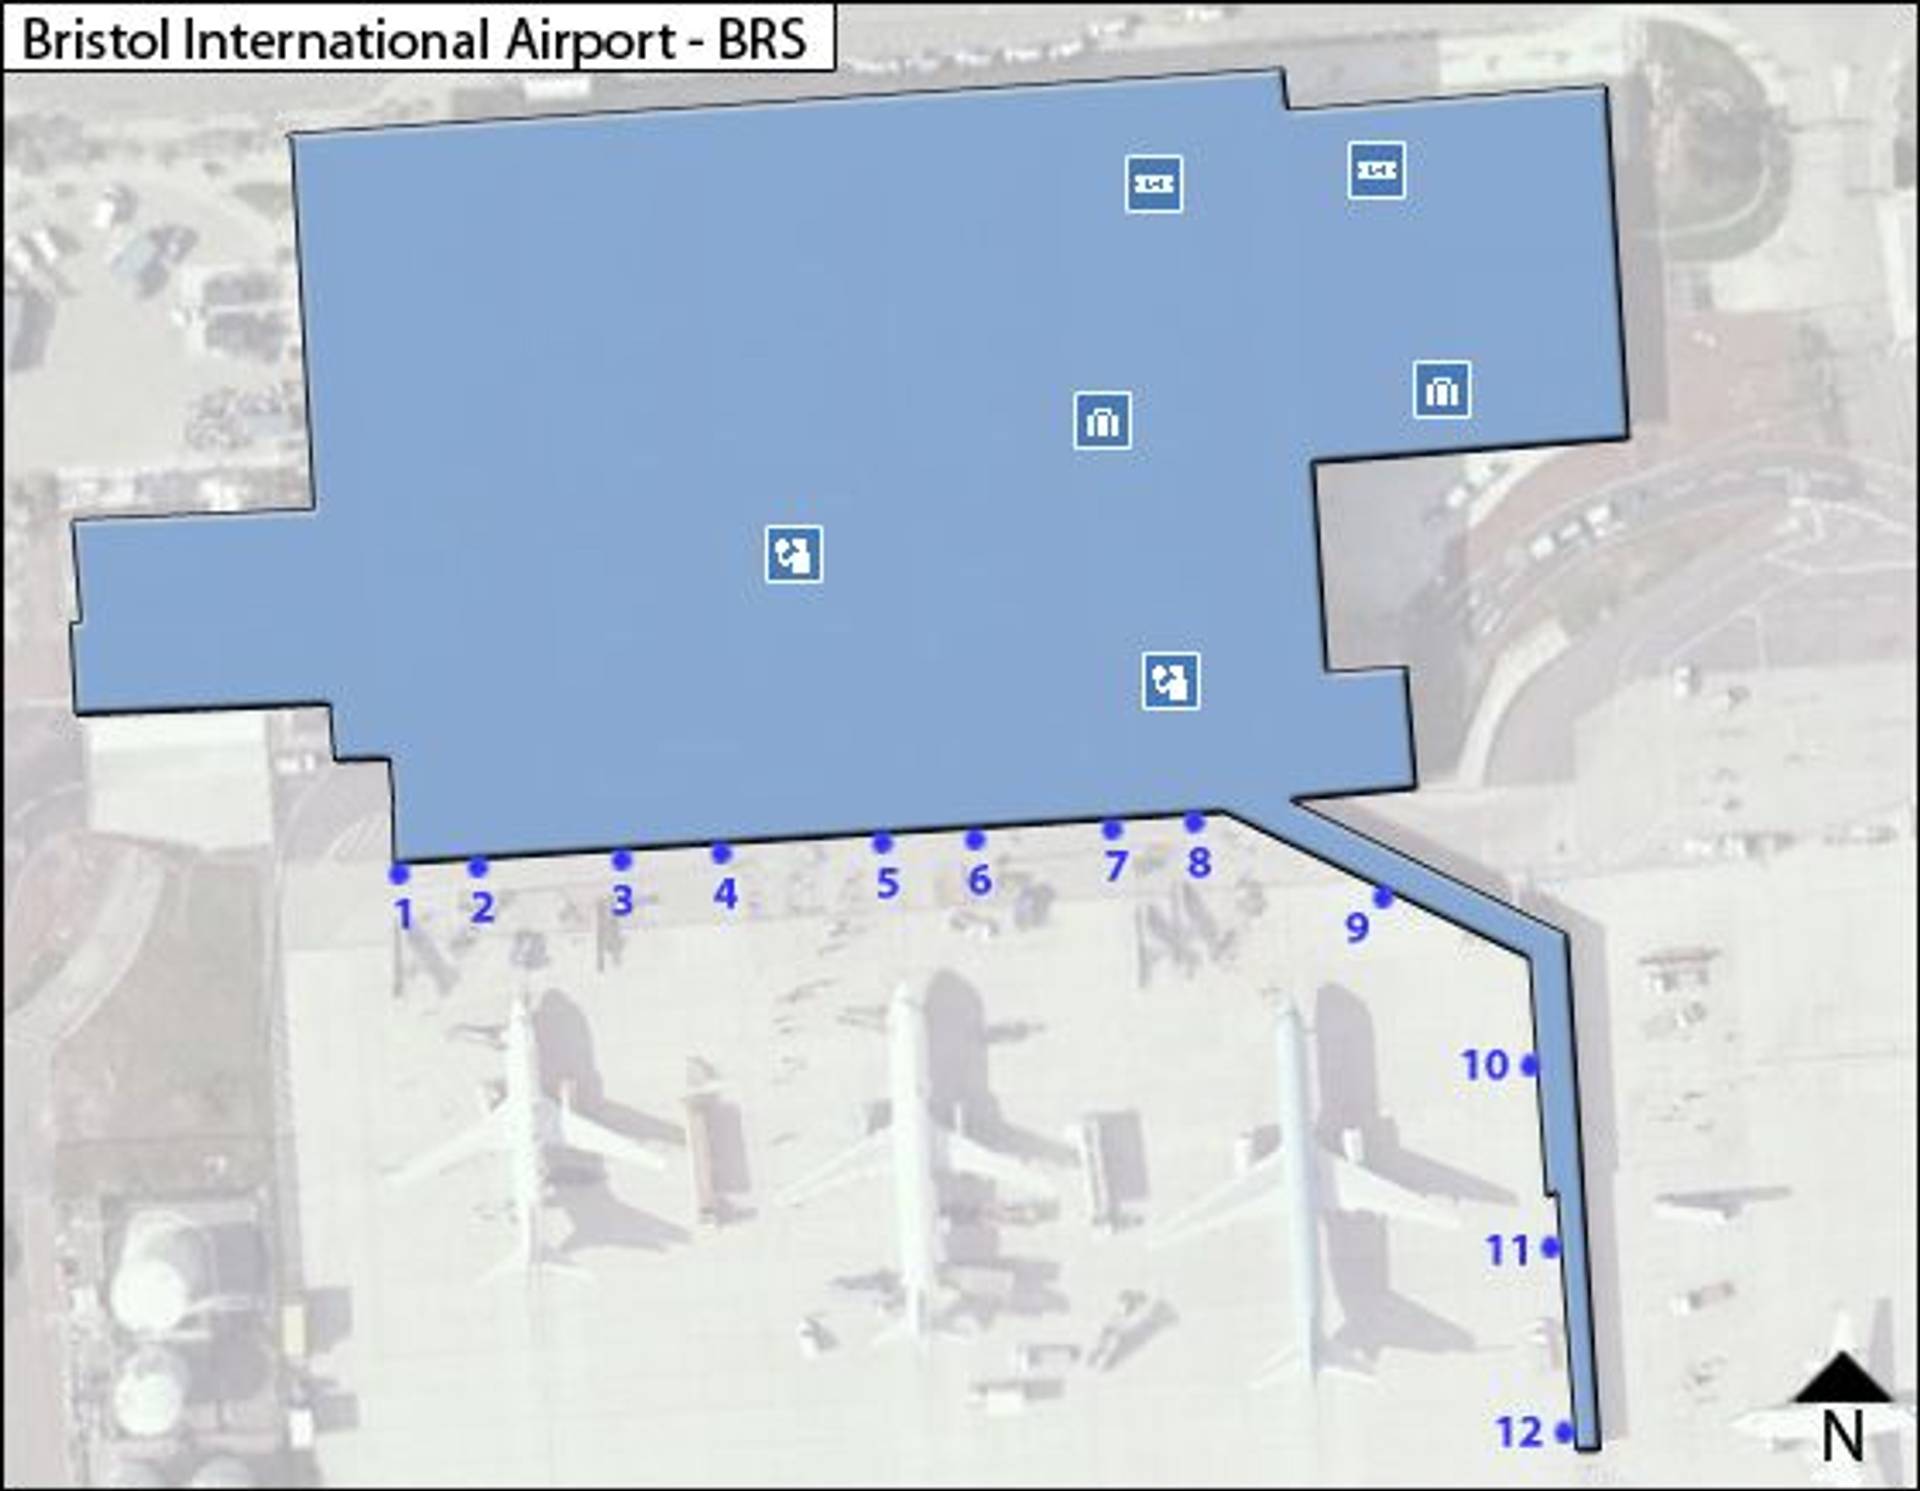 bristol airport travel information